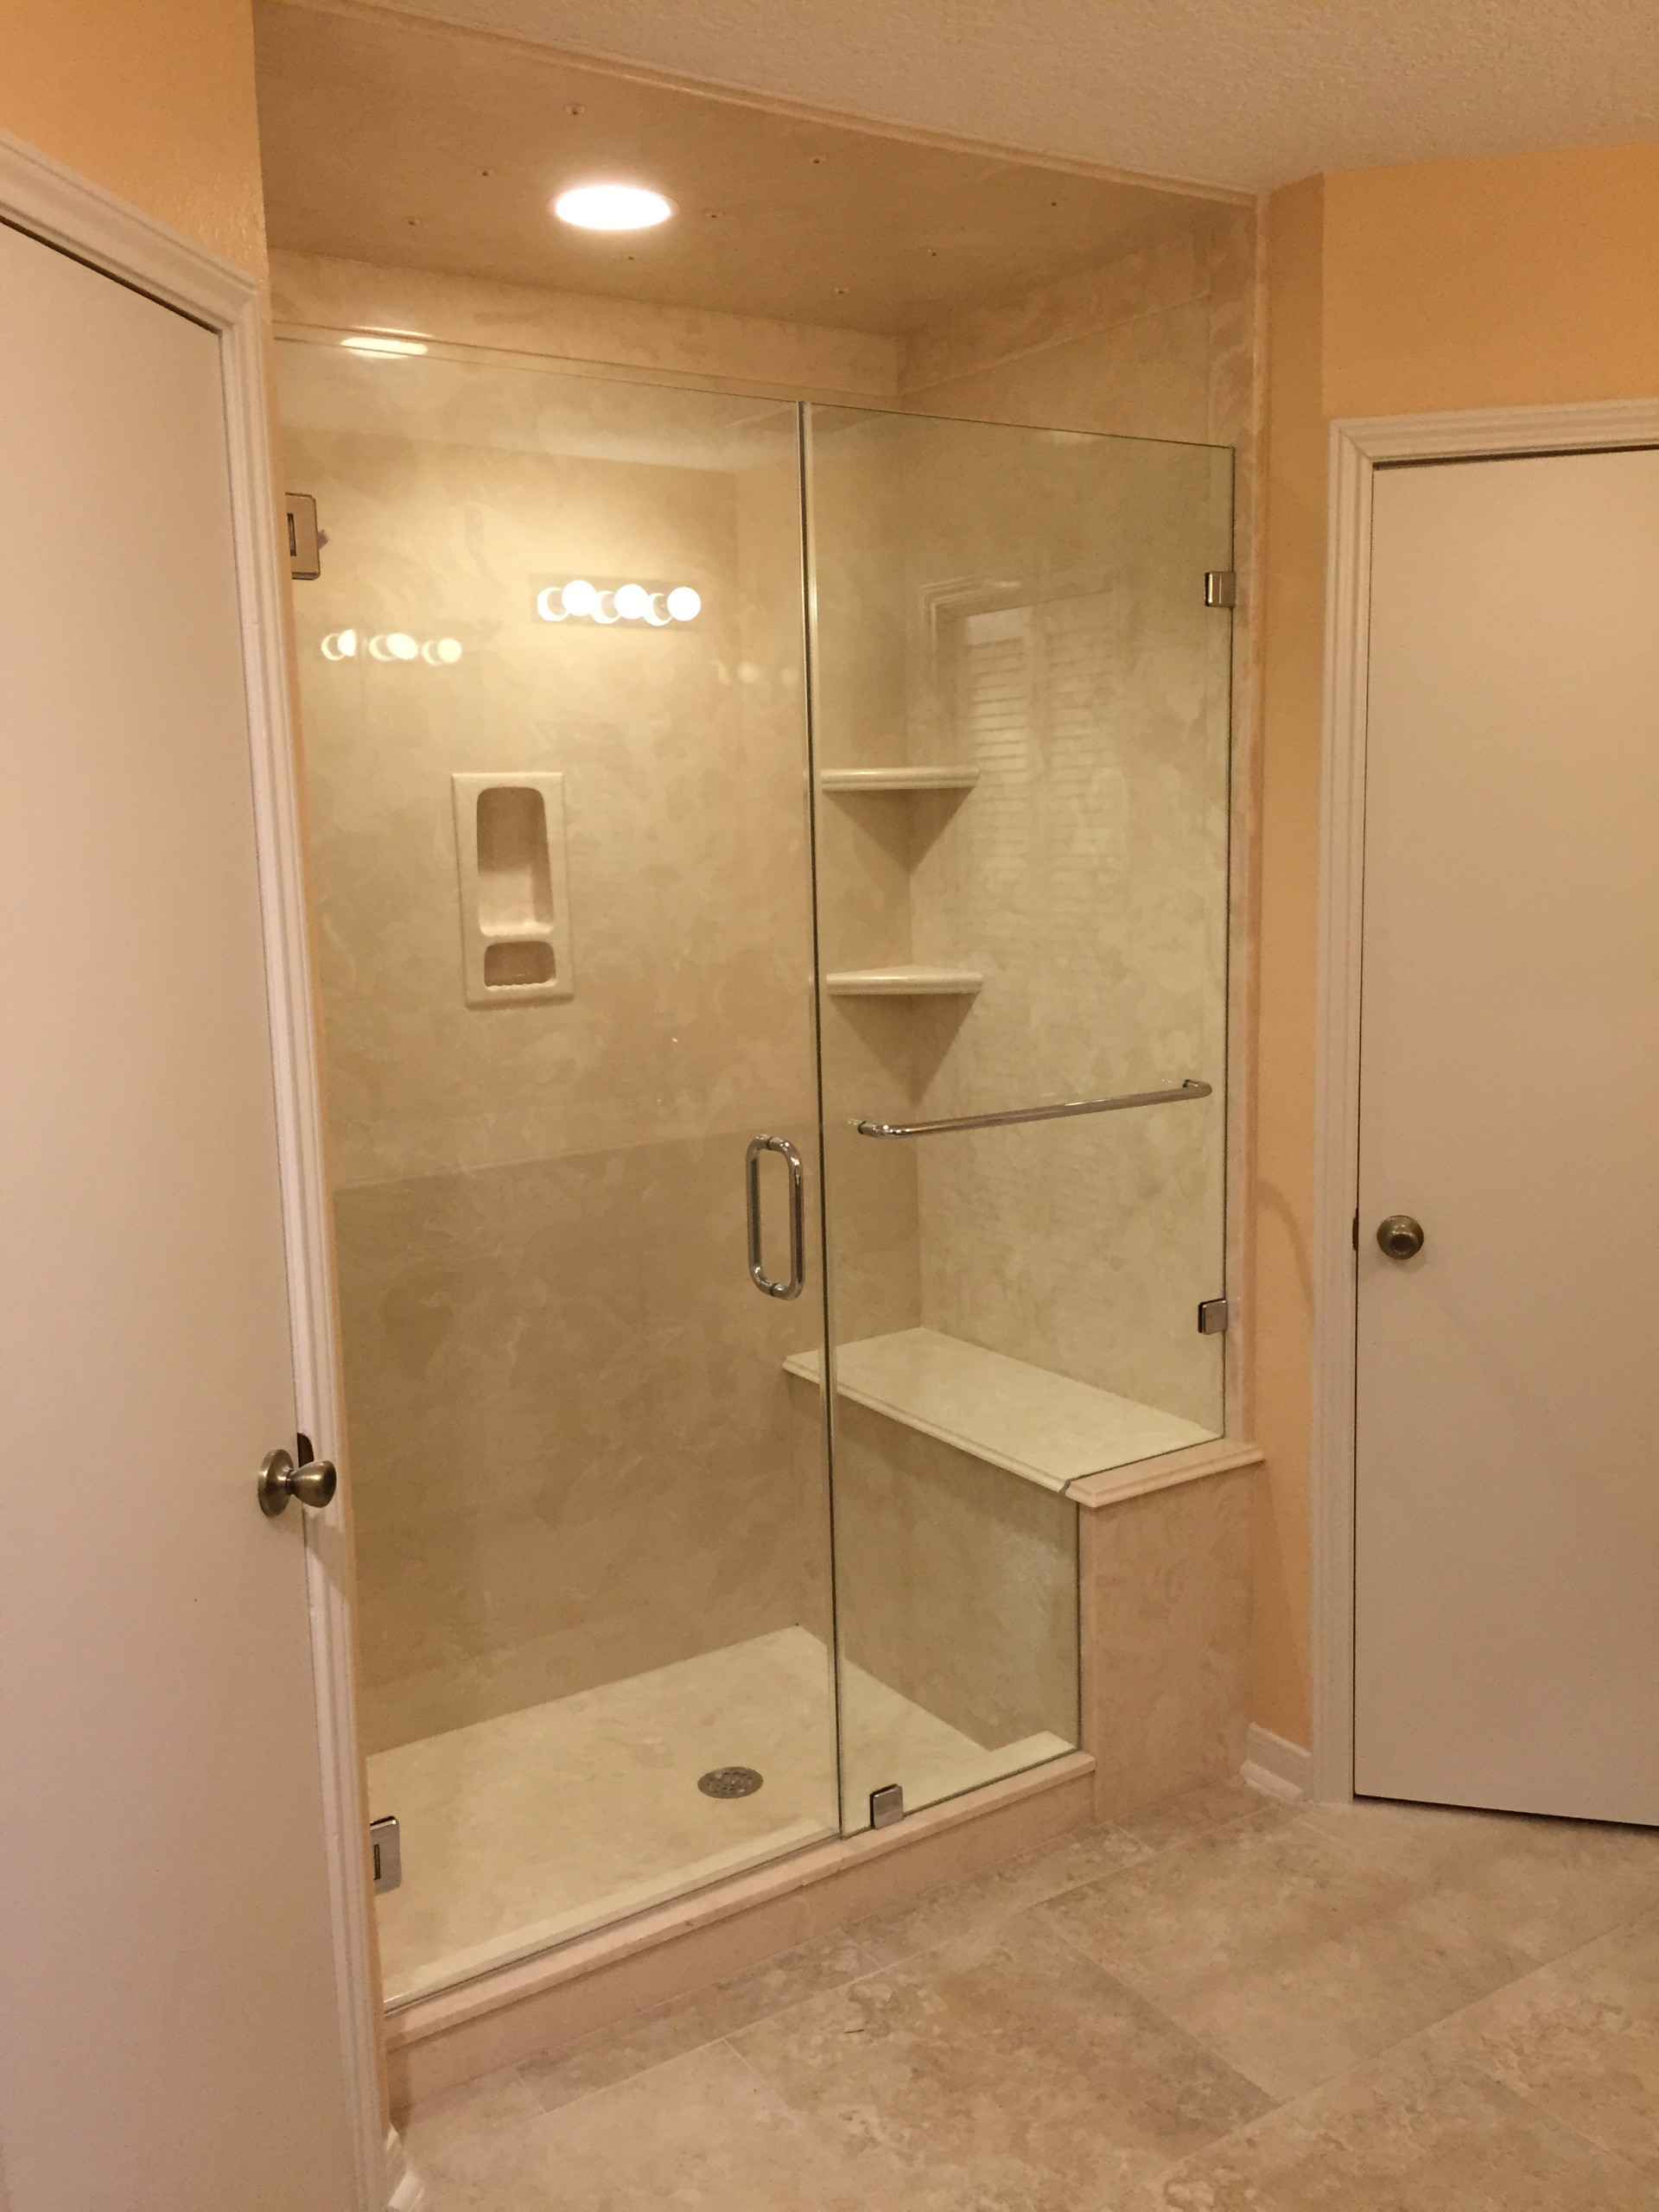 Sequoia - Kitchen/Living room/Master Bedroom-Bathroom Suite Remodel